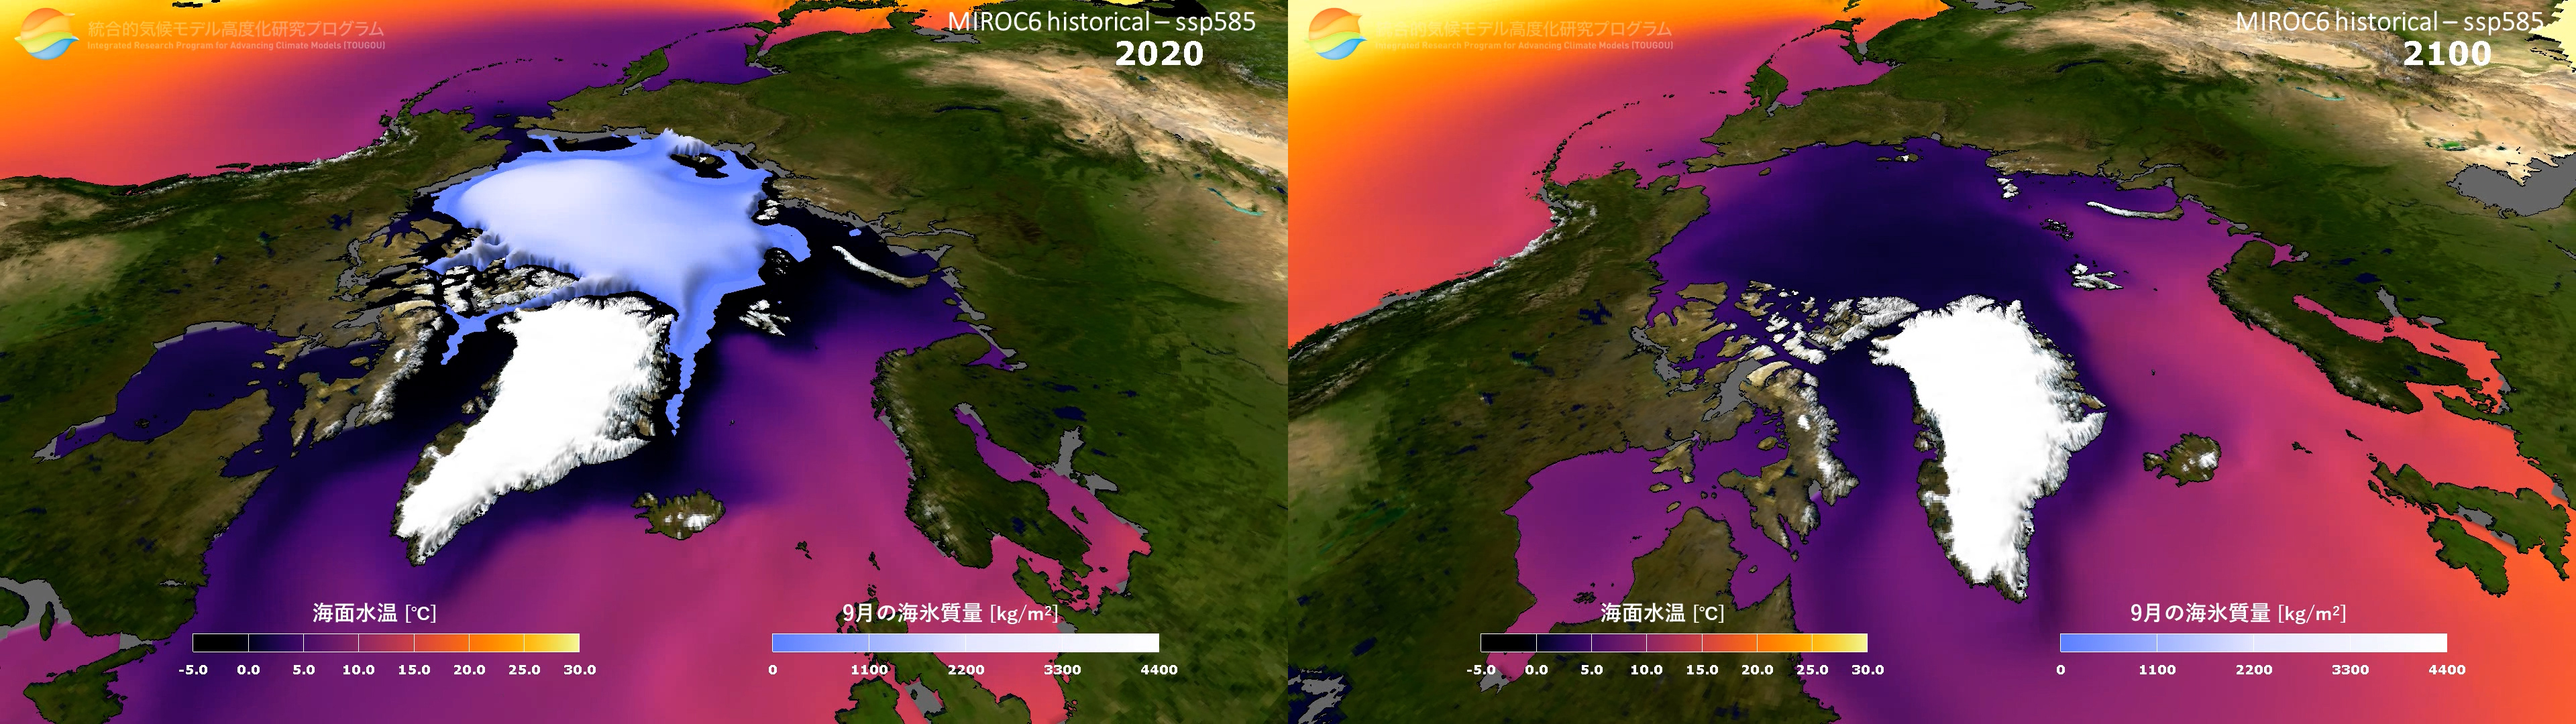 シュミレーション結果データの画面キャプチャ、左側は現在、右側は2100年の予測で北極海の氷がなくなっている図